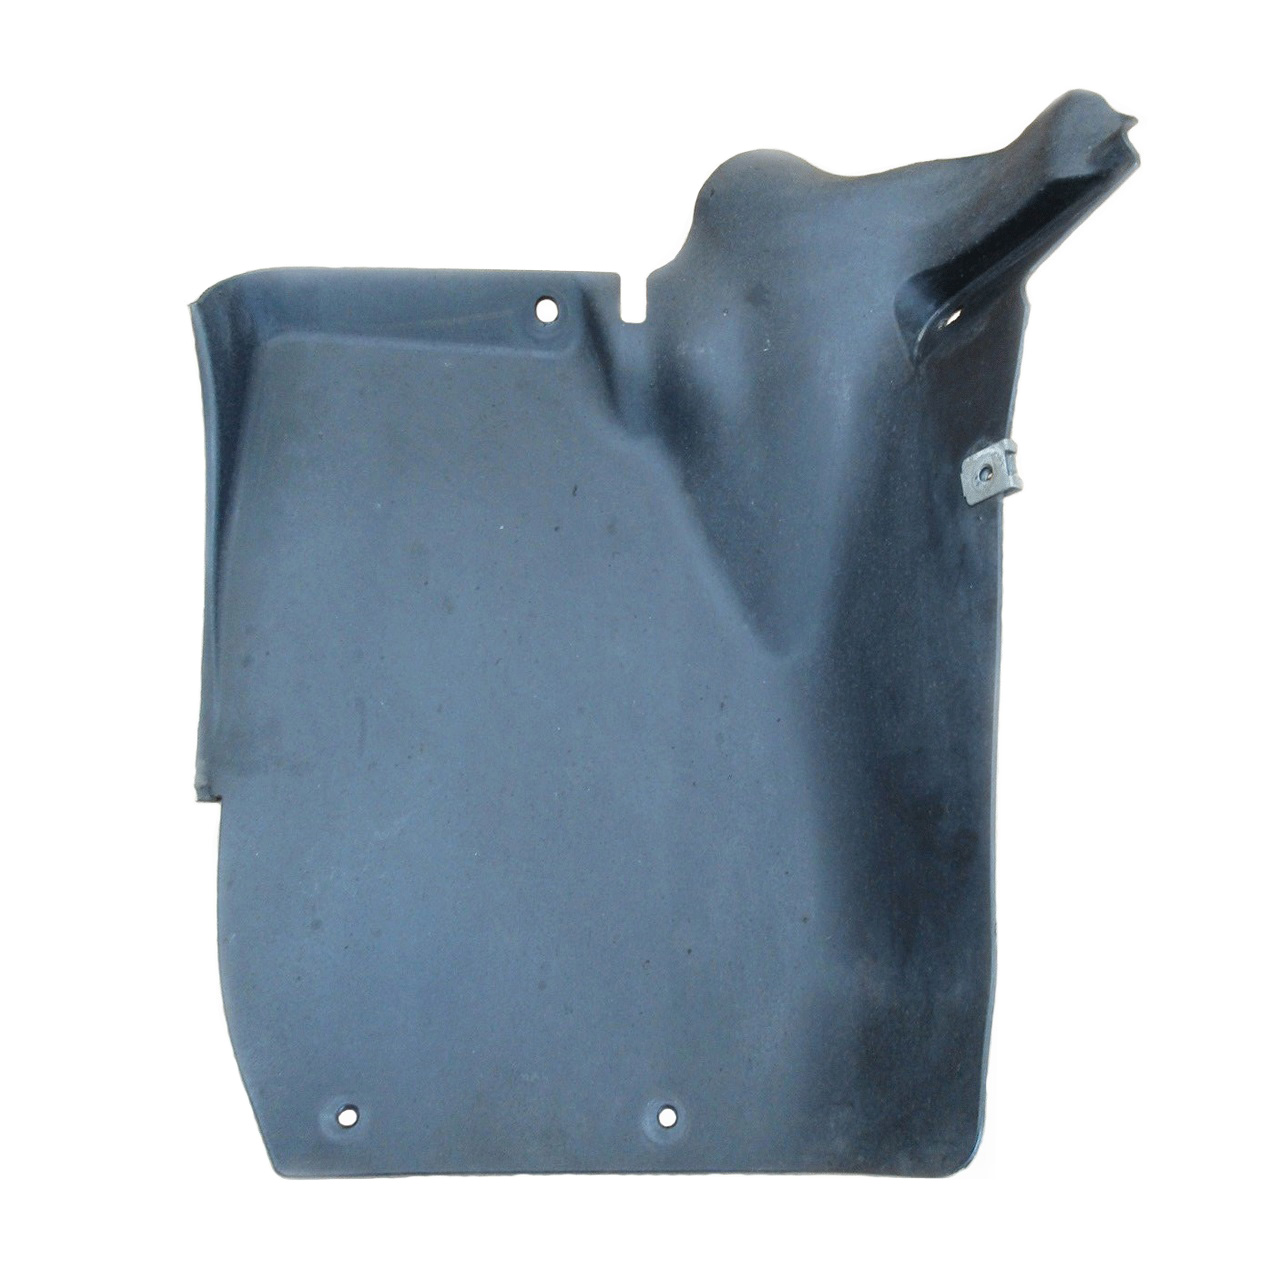 شلگیر عقب چپ مدل Splash Shield مناسب برای پورشه باکستر 2009-2012